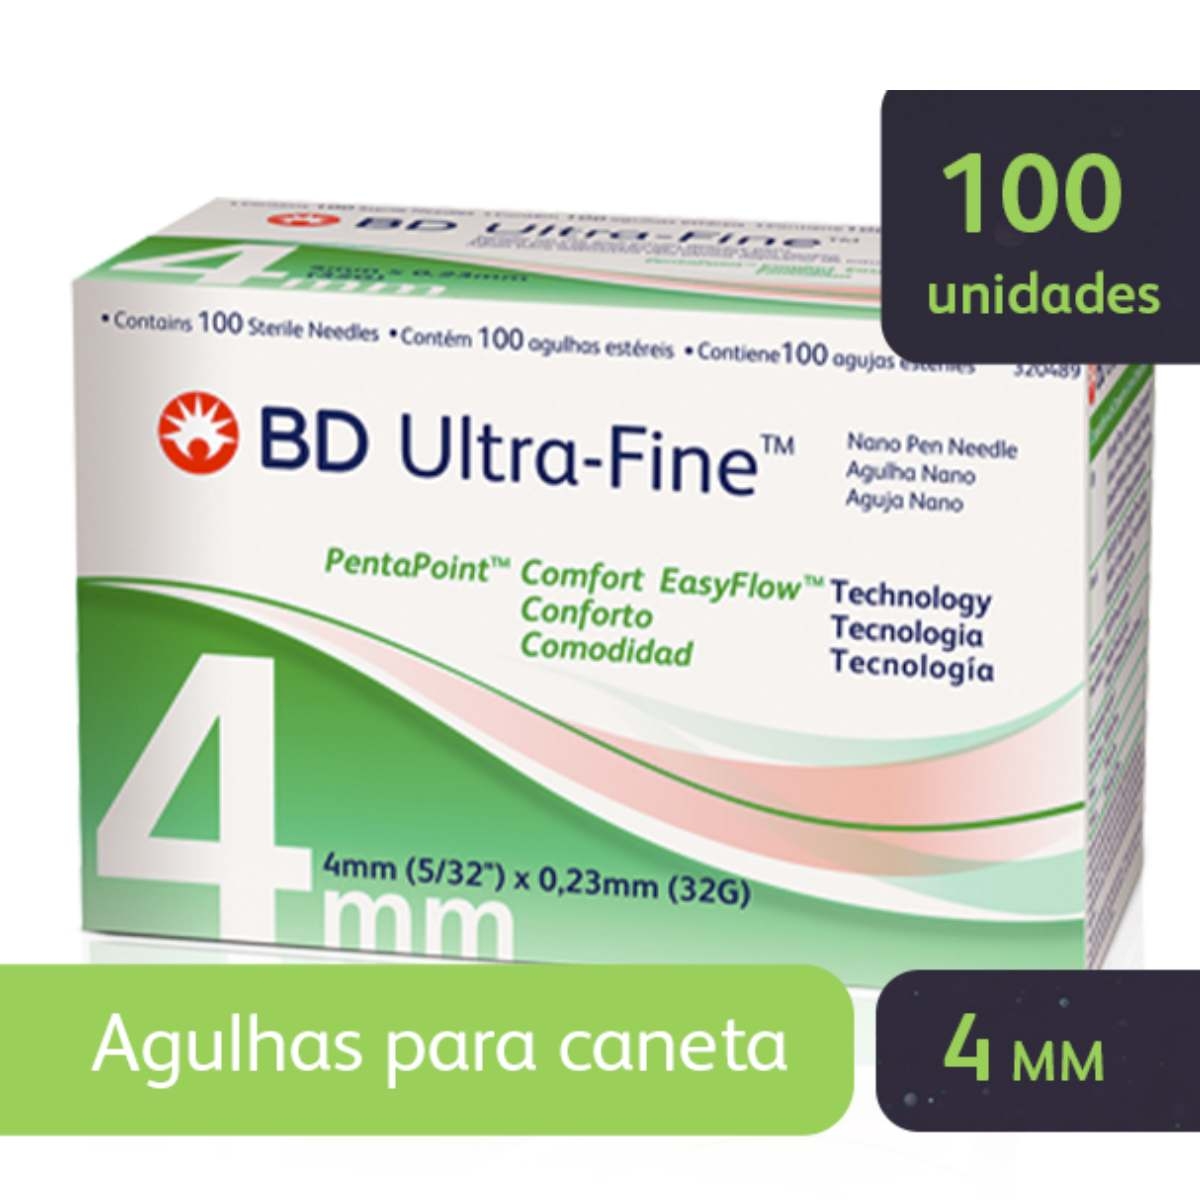 Novofine Agulha de Insulina Novofine 32G 6Mm , 100 unidades